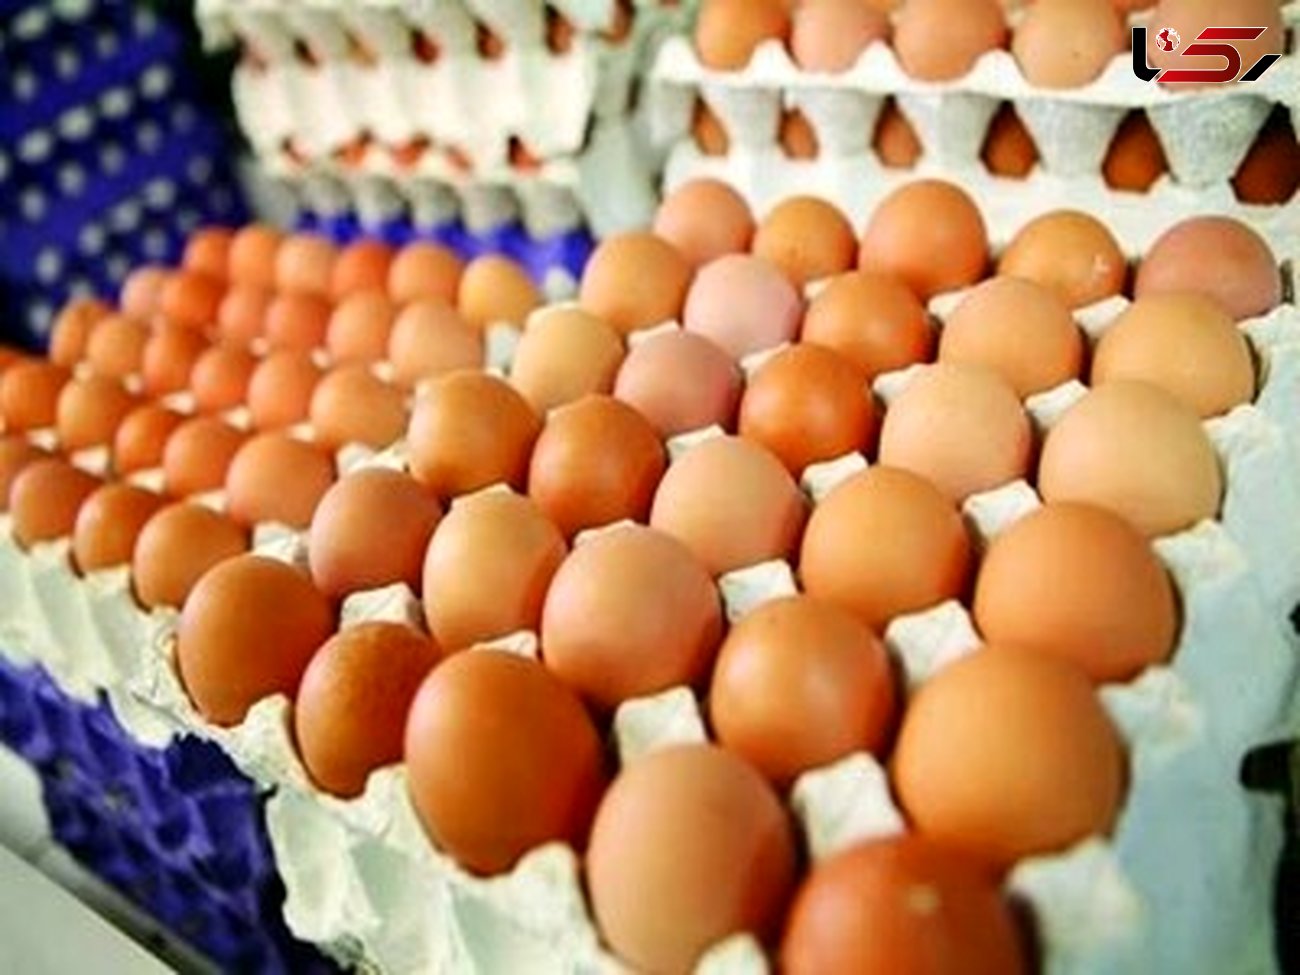  آنفولانزای پرندگان باعث توقف صادرات تخم مرغ شد  